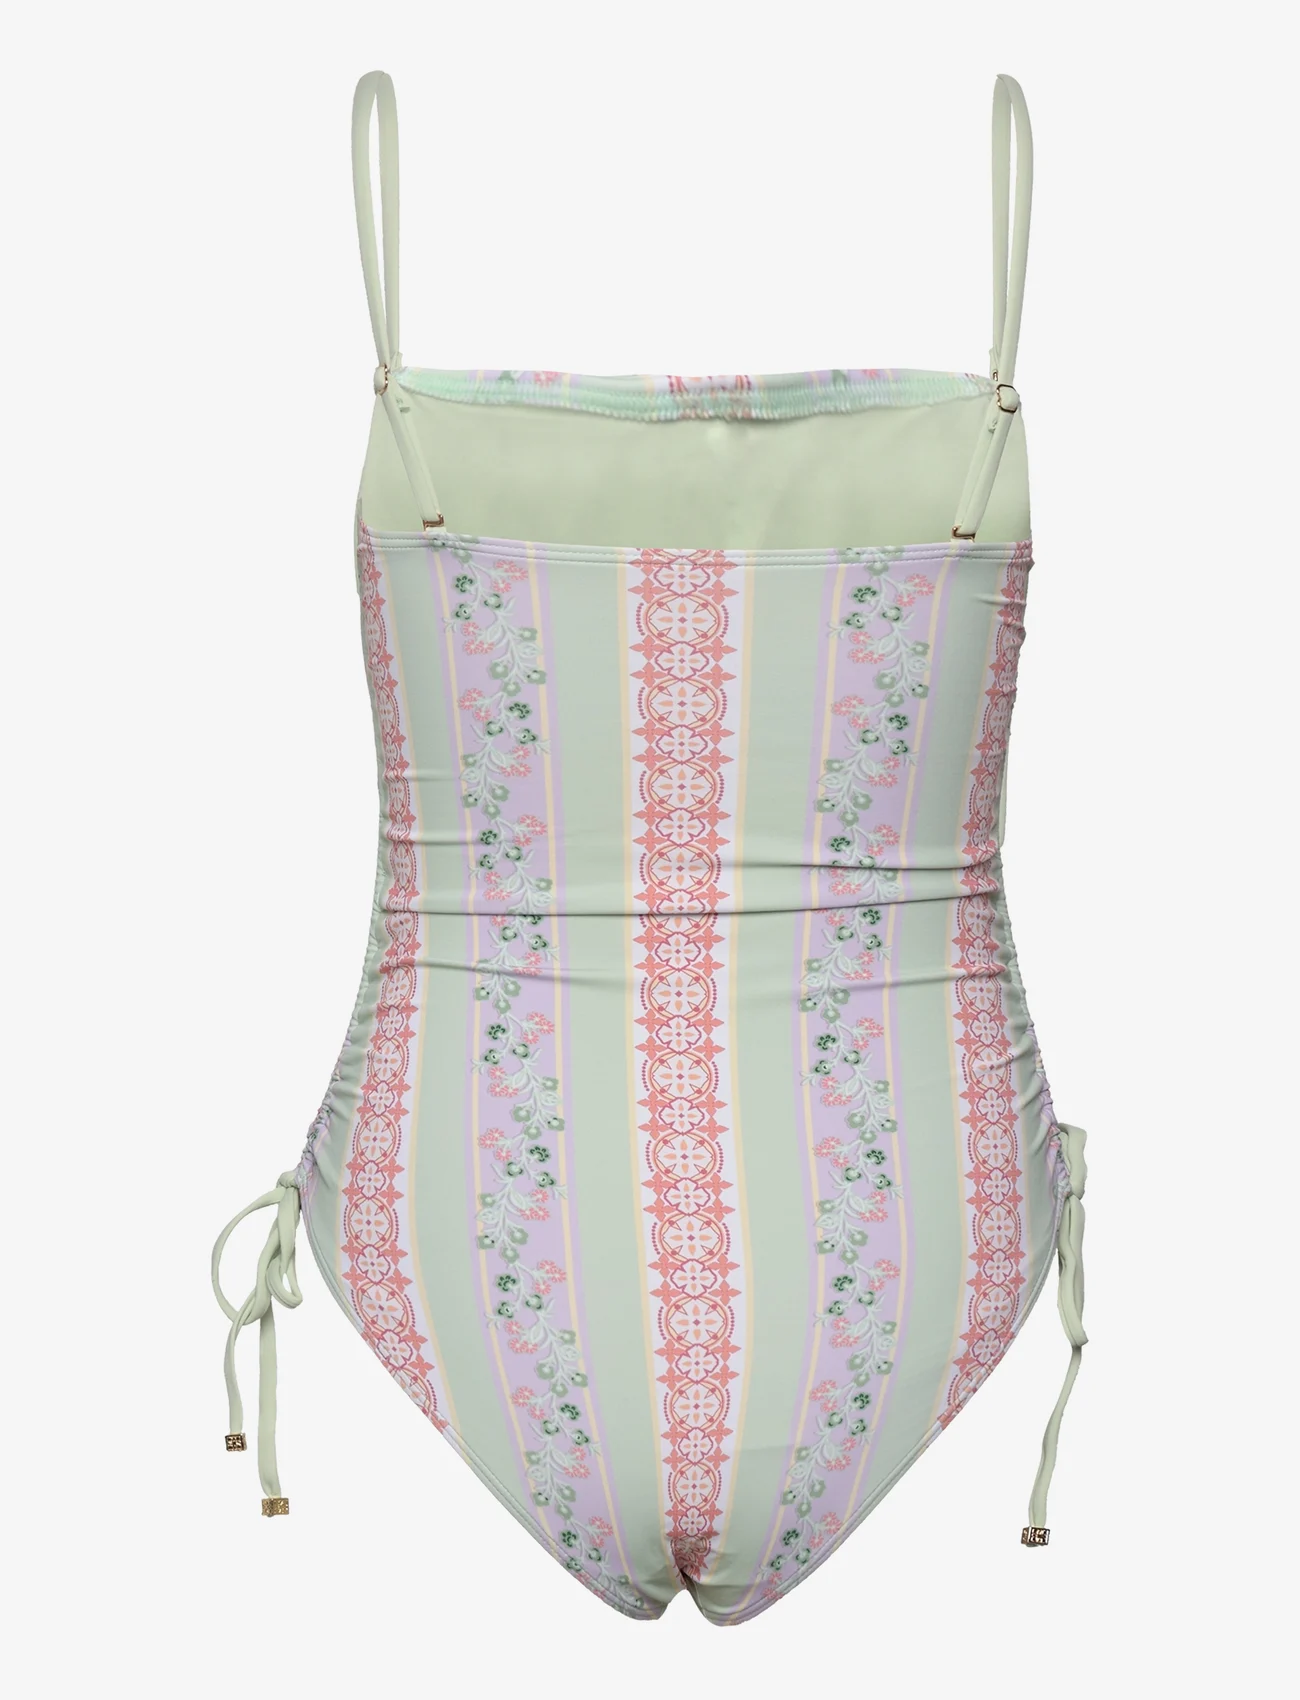 Malina - Lauren printed drawstring swimsuit - badedrakter - pastel palm mint - 1